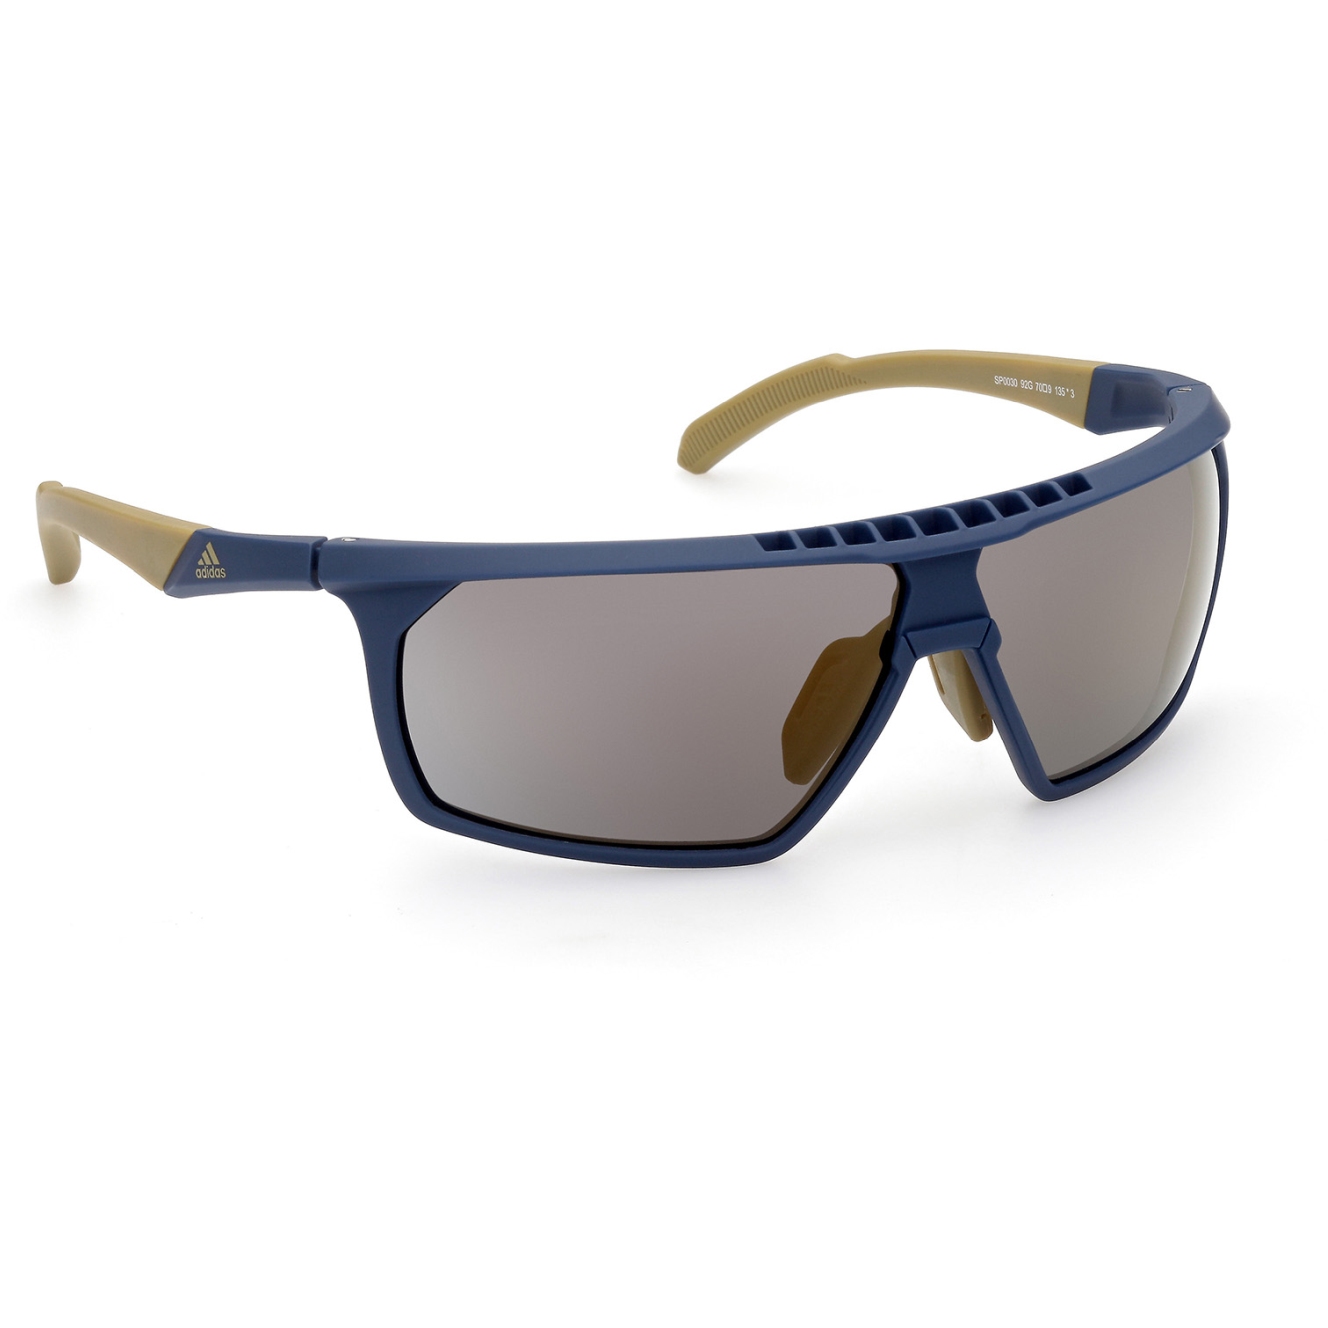 Produktbild von adidas Sp0030 Injected Sportsonnenbrille - Pure Blue / Contrast Mirror Gold Flash